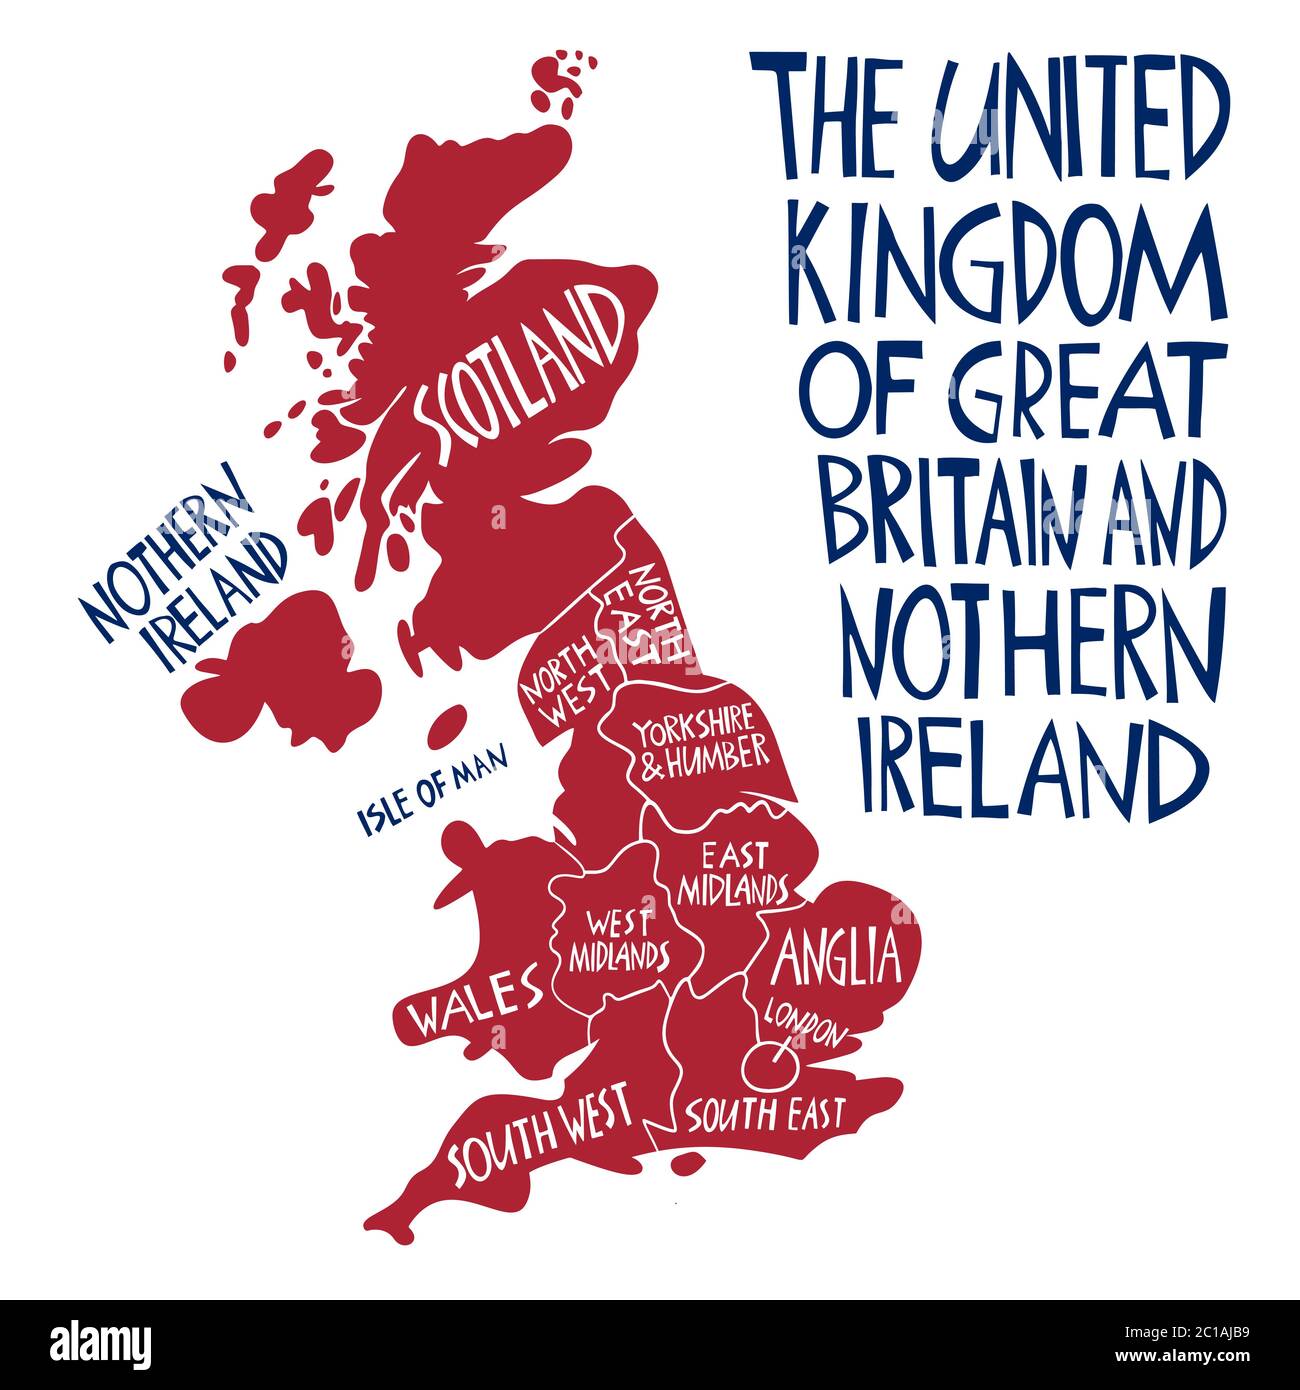 Vektor Hand gezeichnet stilisierte Karte des Vereinigten Königreichs. Reisedarstellung der Regionen Großbritanniens. Handgezeichnete Beschriftung. Europa Karte elemen Stock Vektor